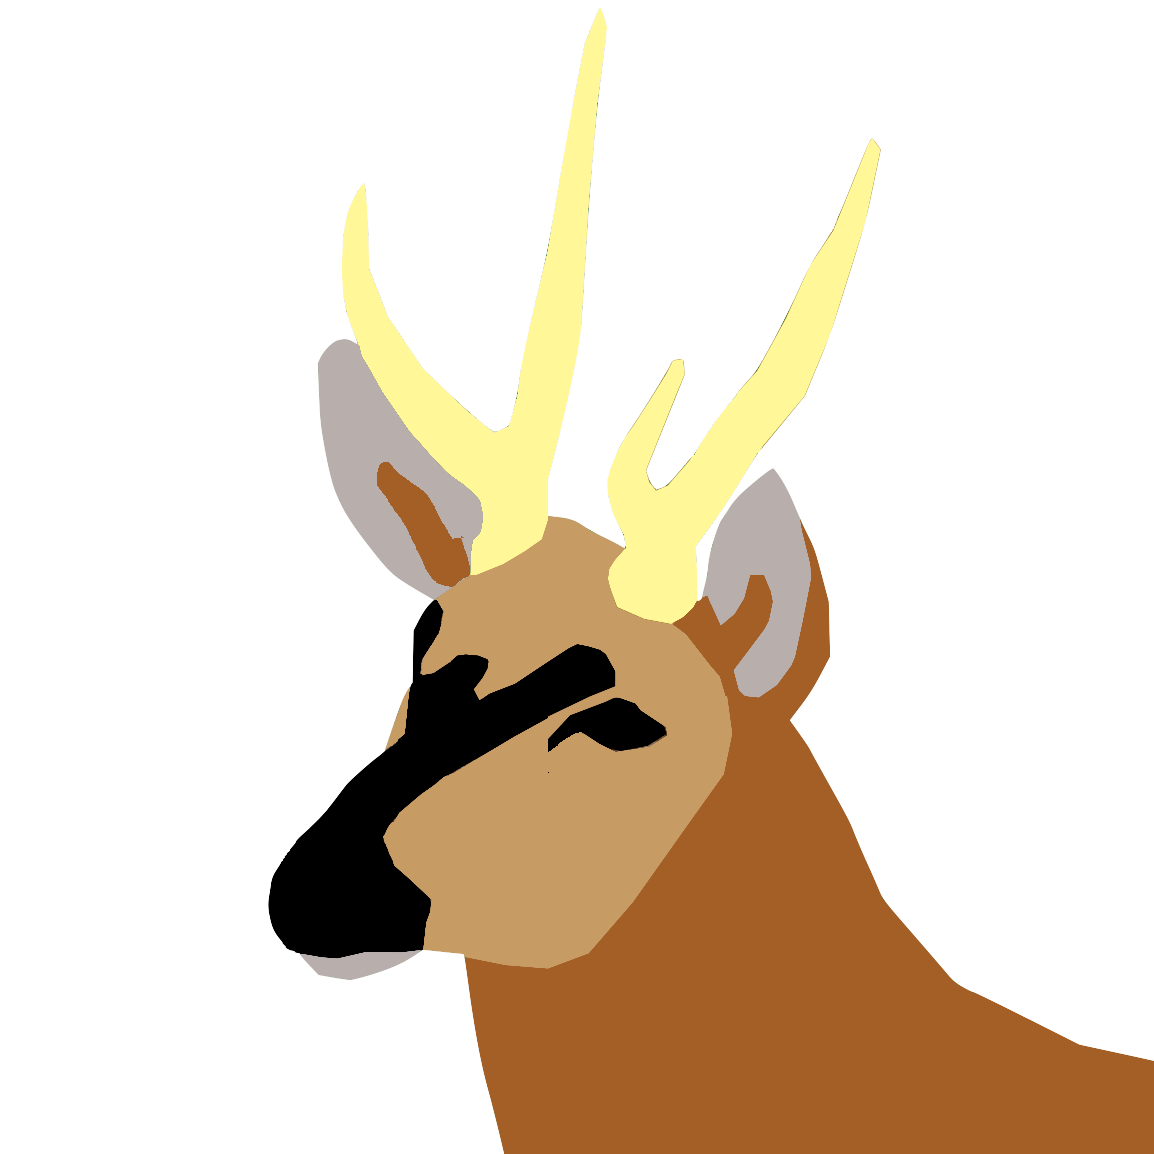 Hippocamelus Deer or Taruca or haemul